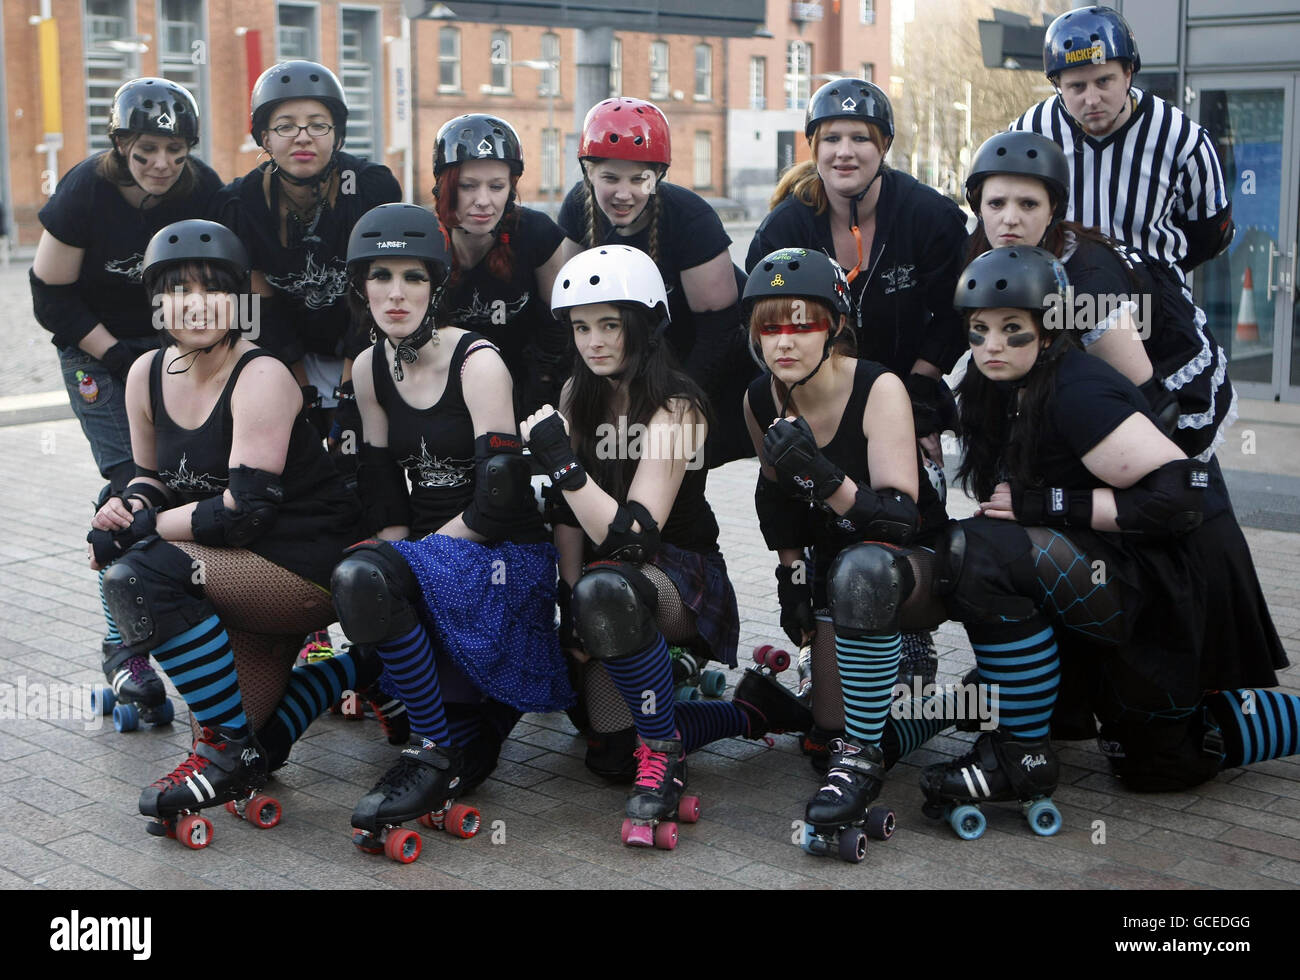 Das Dublin Roller Girls Roller Derby Team bei ihrem Start in Dublin an diesem Wochenende. Stockfoto